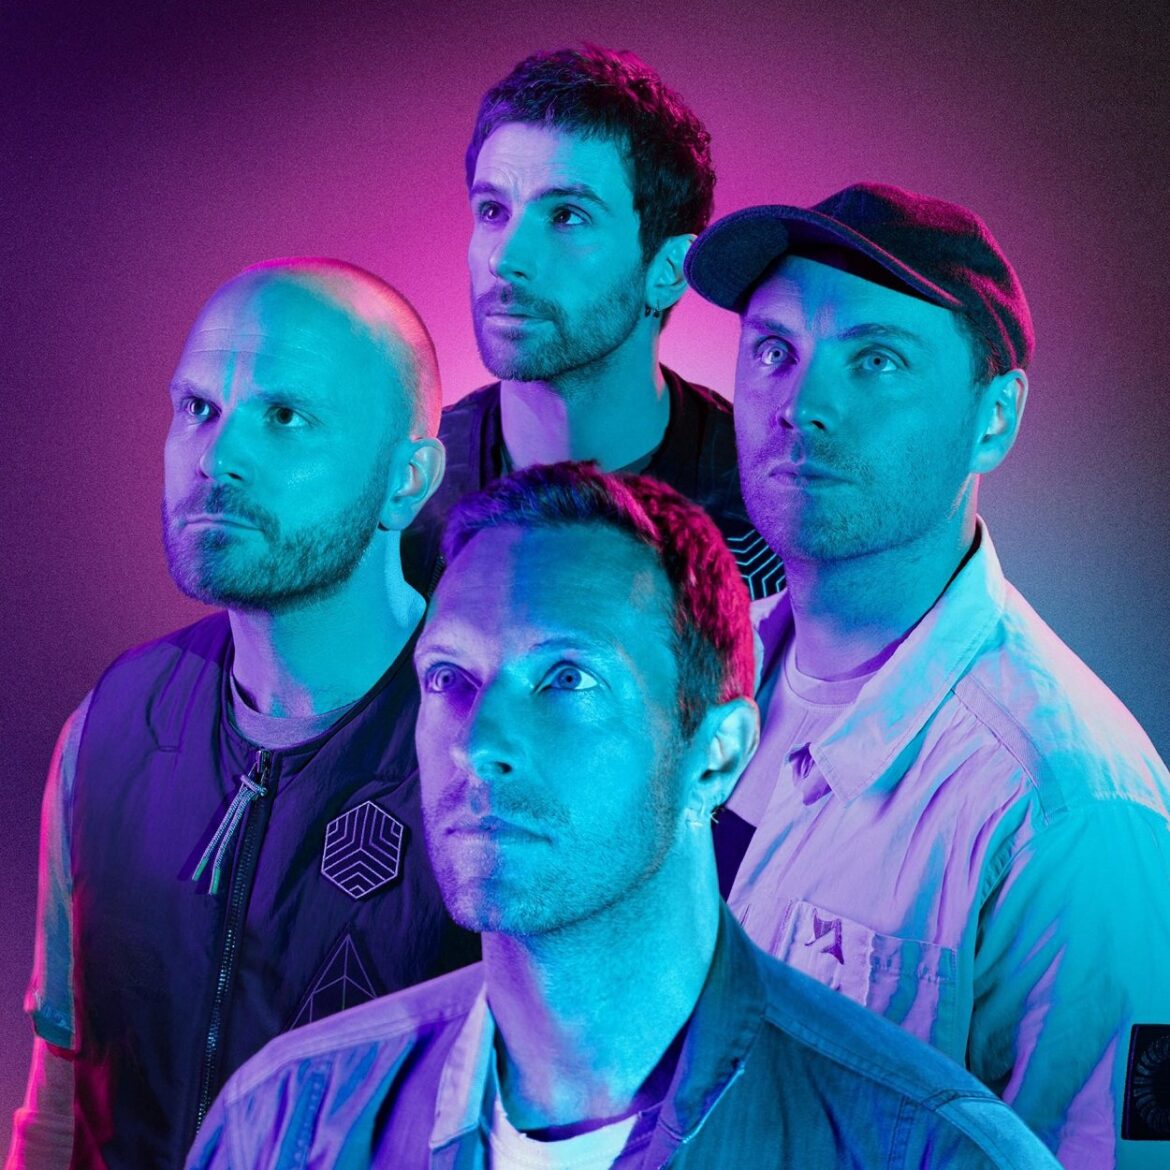 Het nieuwe album van Coldplay